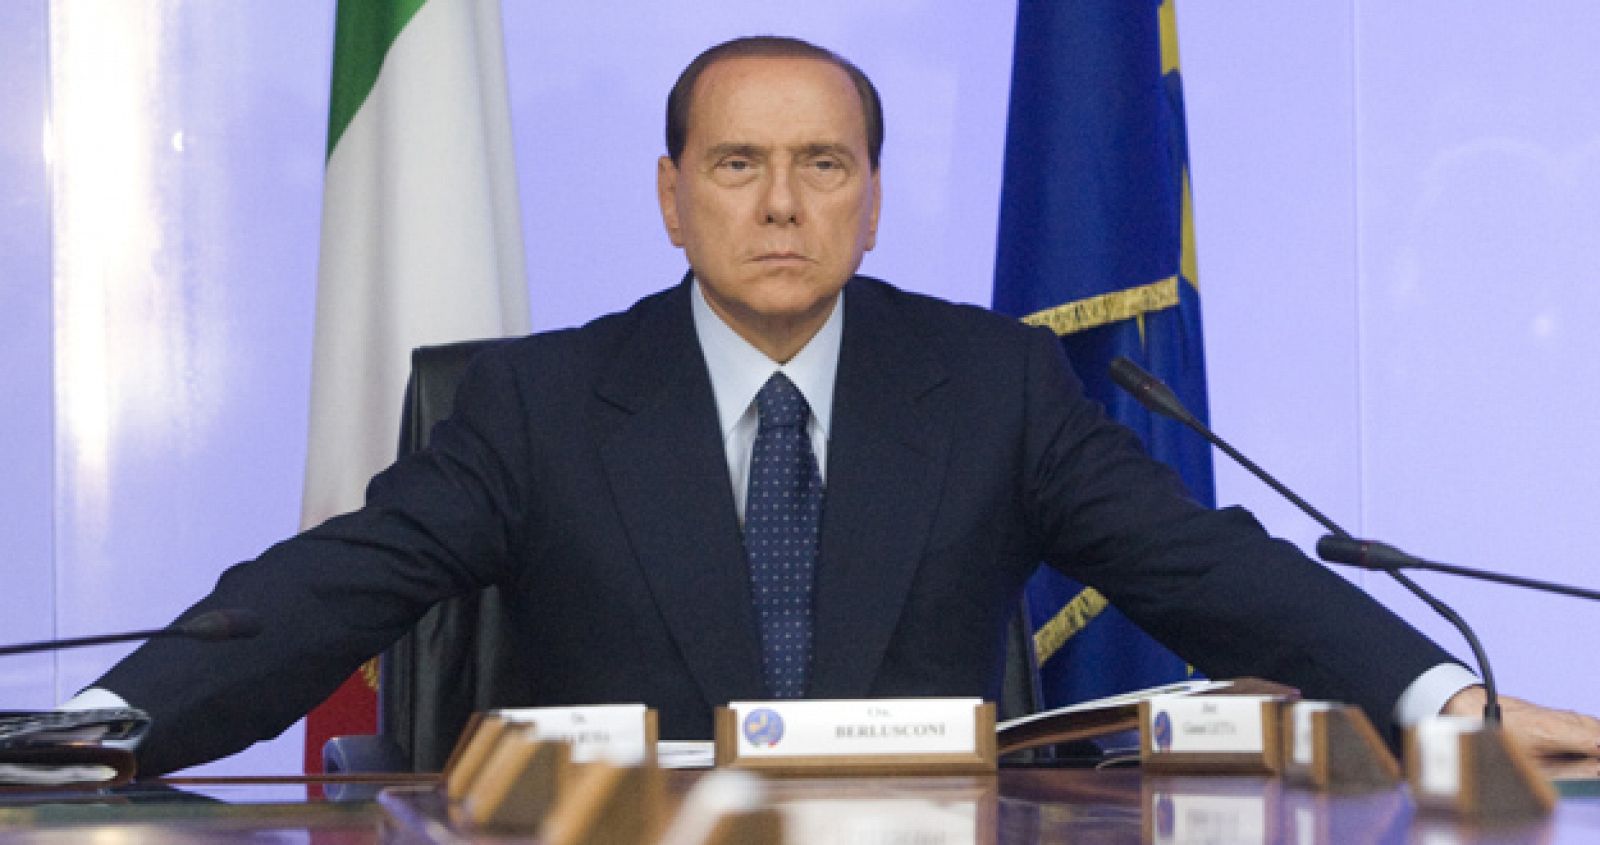 El primer ministro italiano, Silvio Berlusconi, ha declarado en varias ocasiones que "no ha hecho nada malo" y ha denunciado a varios medios de comunicación por la publicación de sus fotos privadas